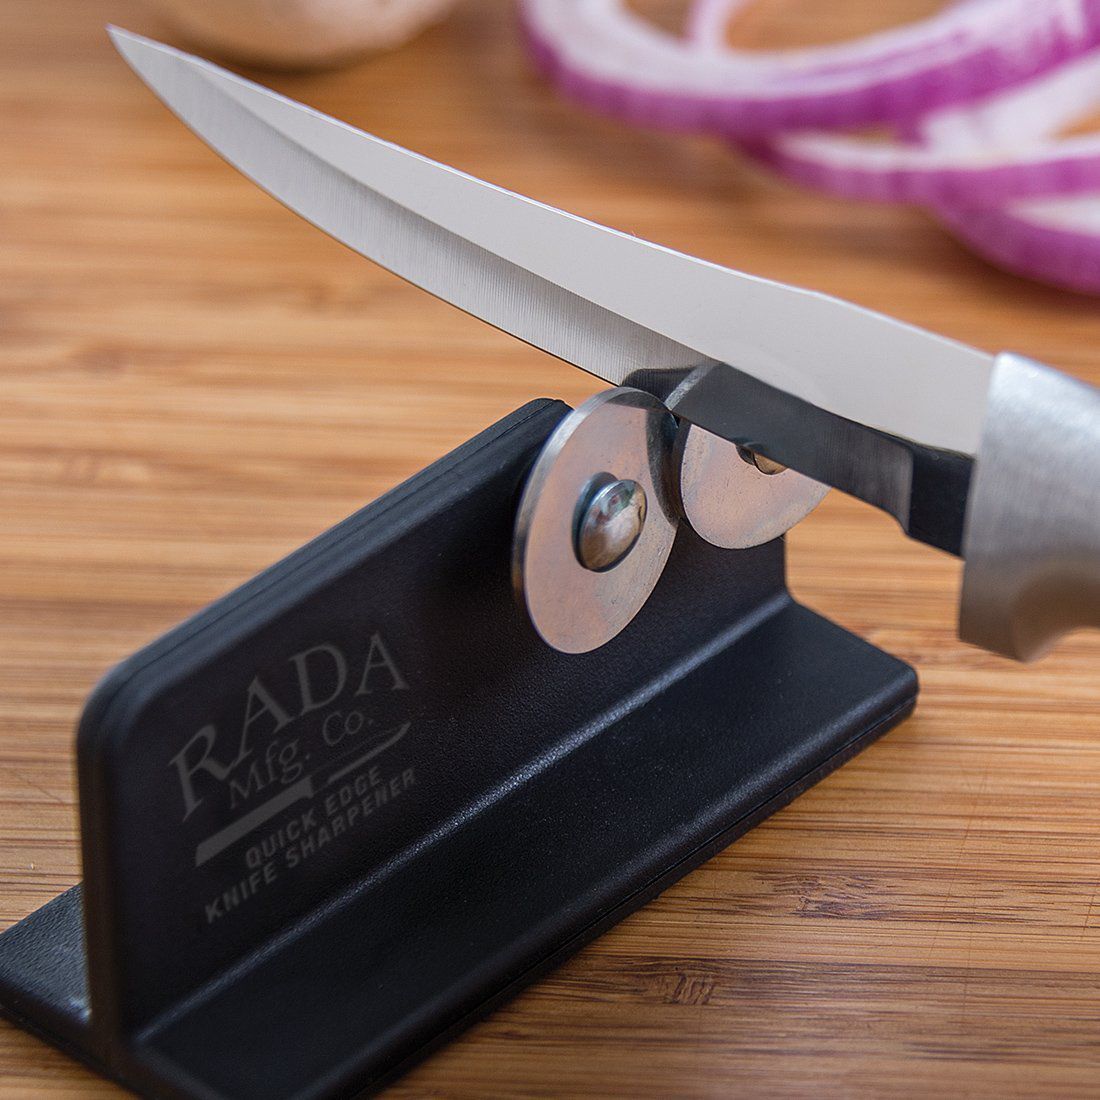 Best Knife Sharpener Reviews Best Sharpening Stone